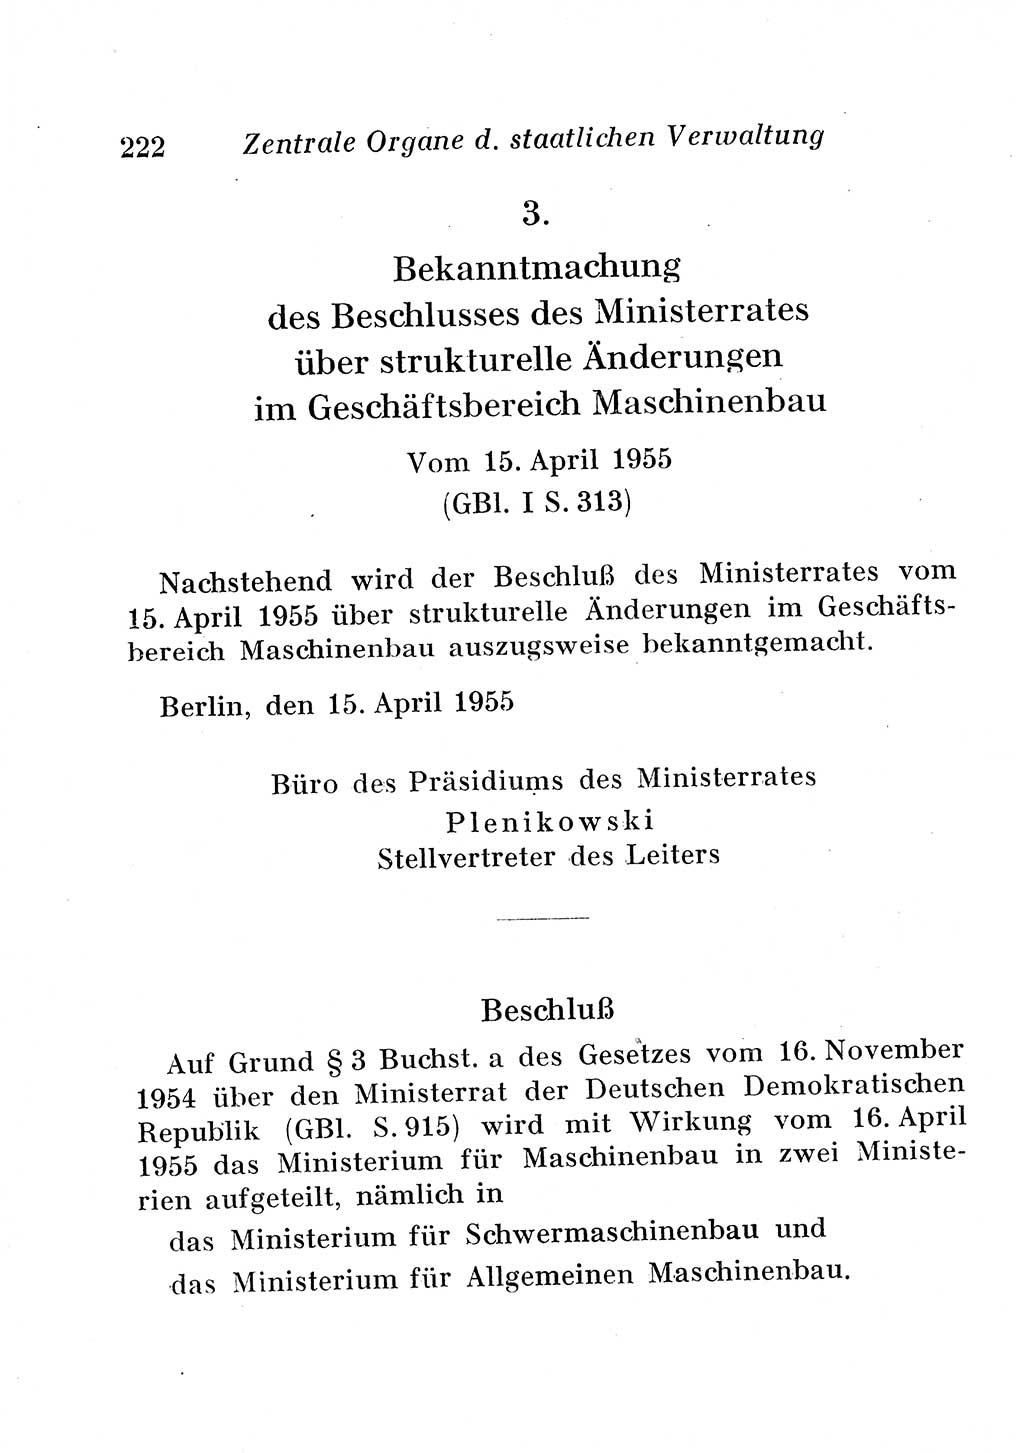 Staats- und verwaltungsrechtliche Gesetze der Deutschen Demokratischen Republik (DDR) 1958, Seite 222 (StVerwR Ges. DDR 1958, S. 222)